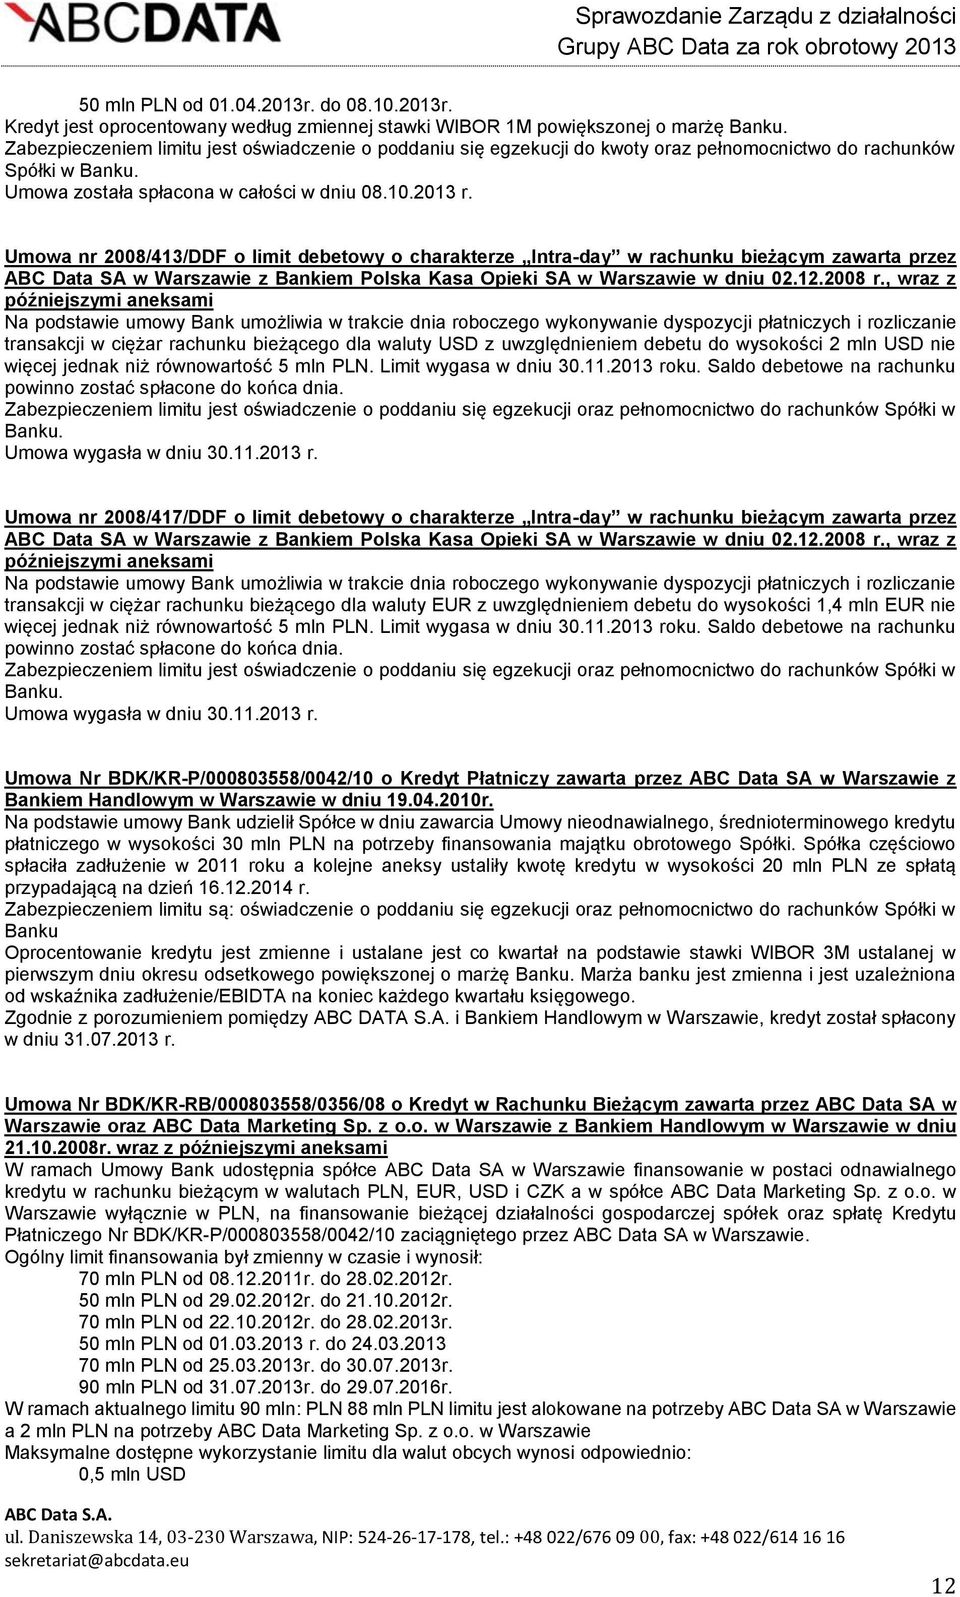 Umowa nr 2008/413/DDF o limit debetowy o charakterze Intra-day w rachunku bieżącym zawarta przez ABC Data SA w Warszawie z Bankiem Polska Kasa Opieki SA w Warszawie w dniu 02.12.2008 r.